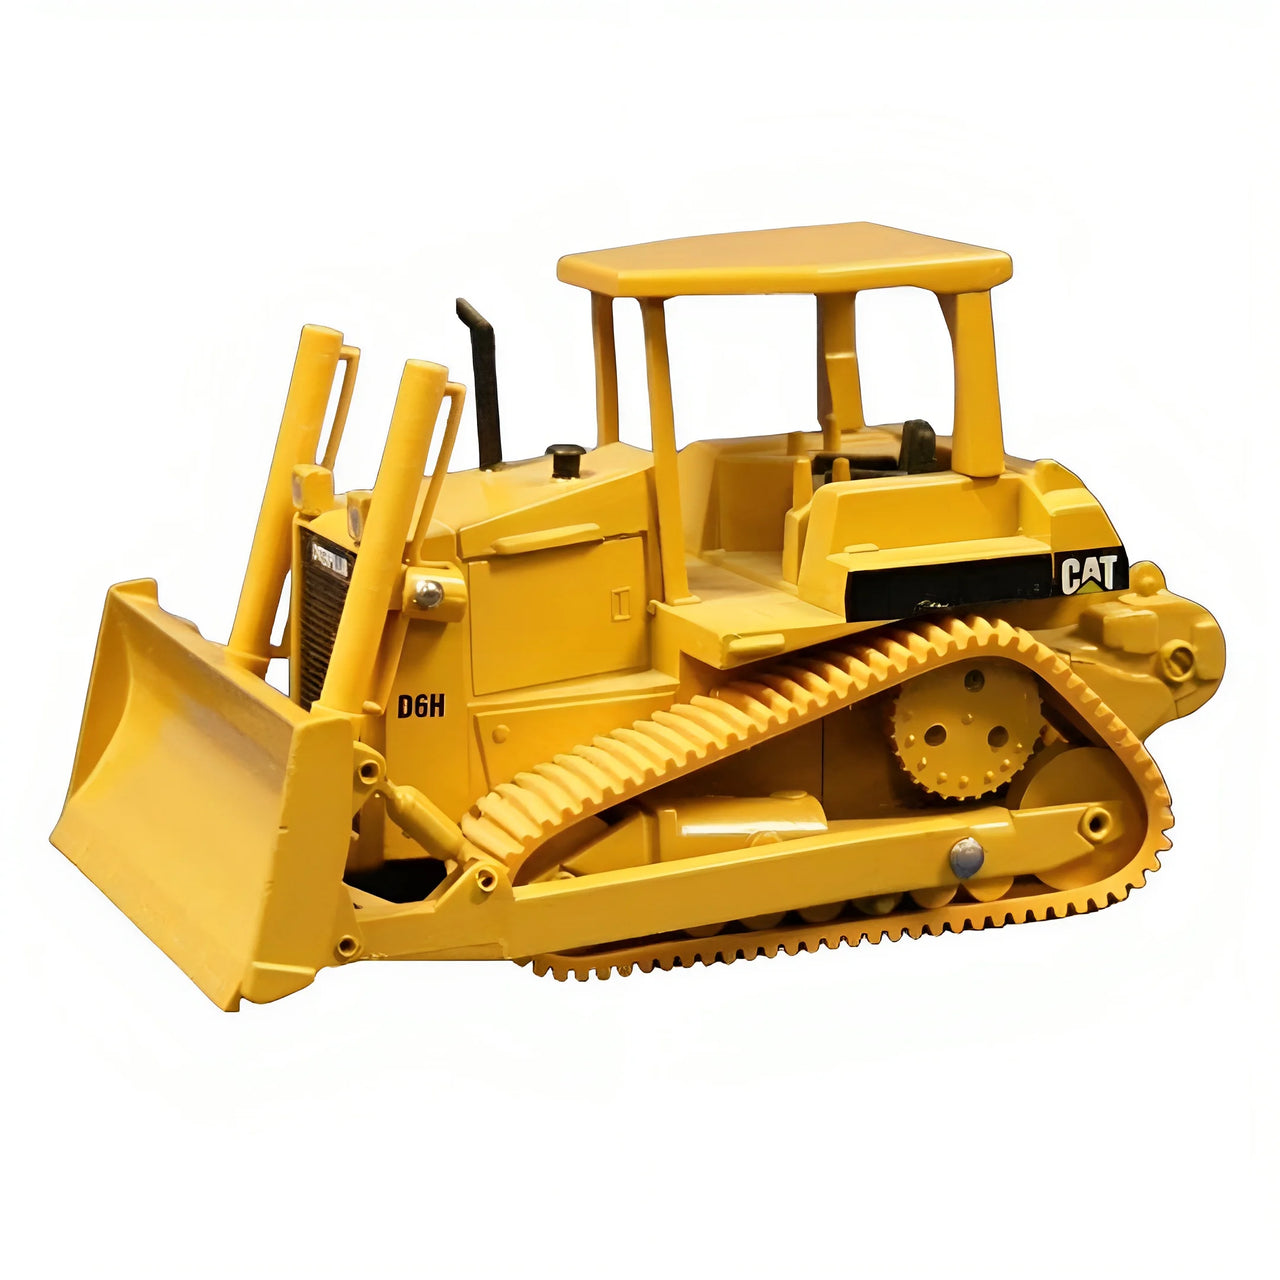 2851W-R Tractor De Orugas Caterpillar D6H Escala 1:50 (Modelo Descontinuado)